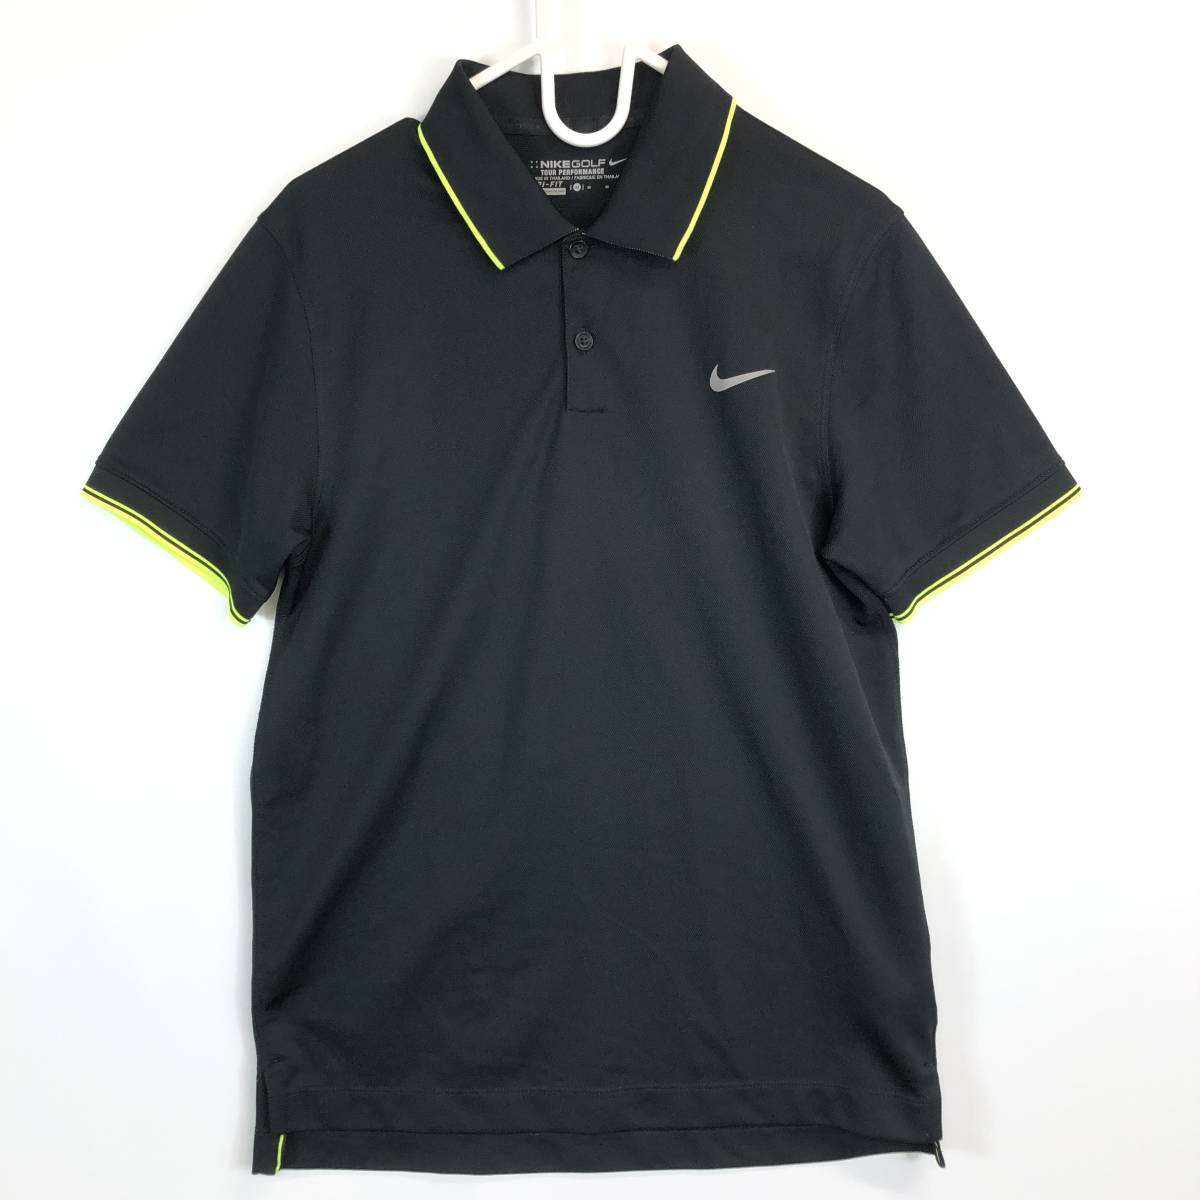 ナイキゴルフ NIKEGOLF 半袖ポロシャツ ブラック Mサイズ 695566